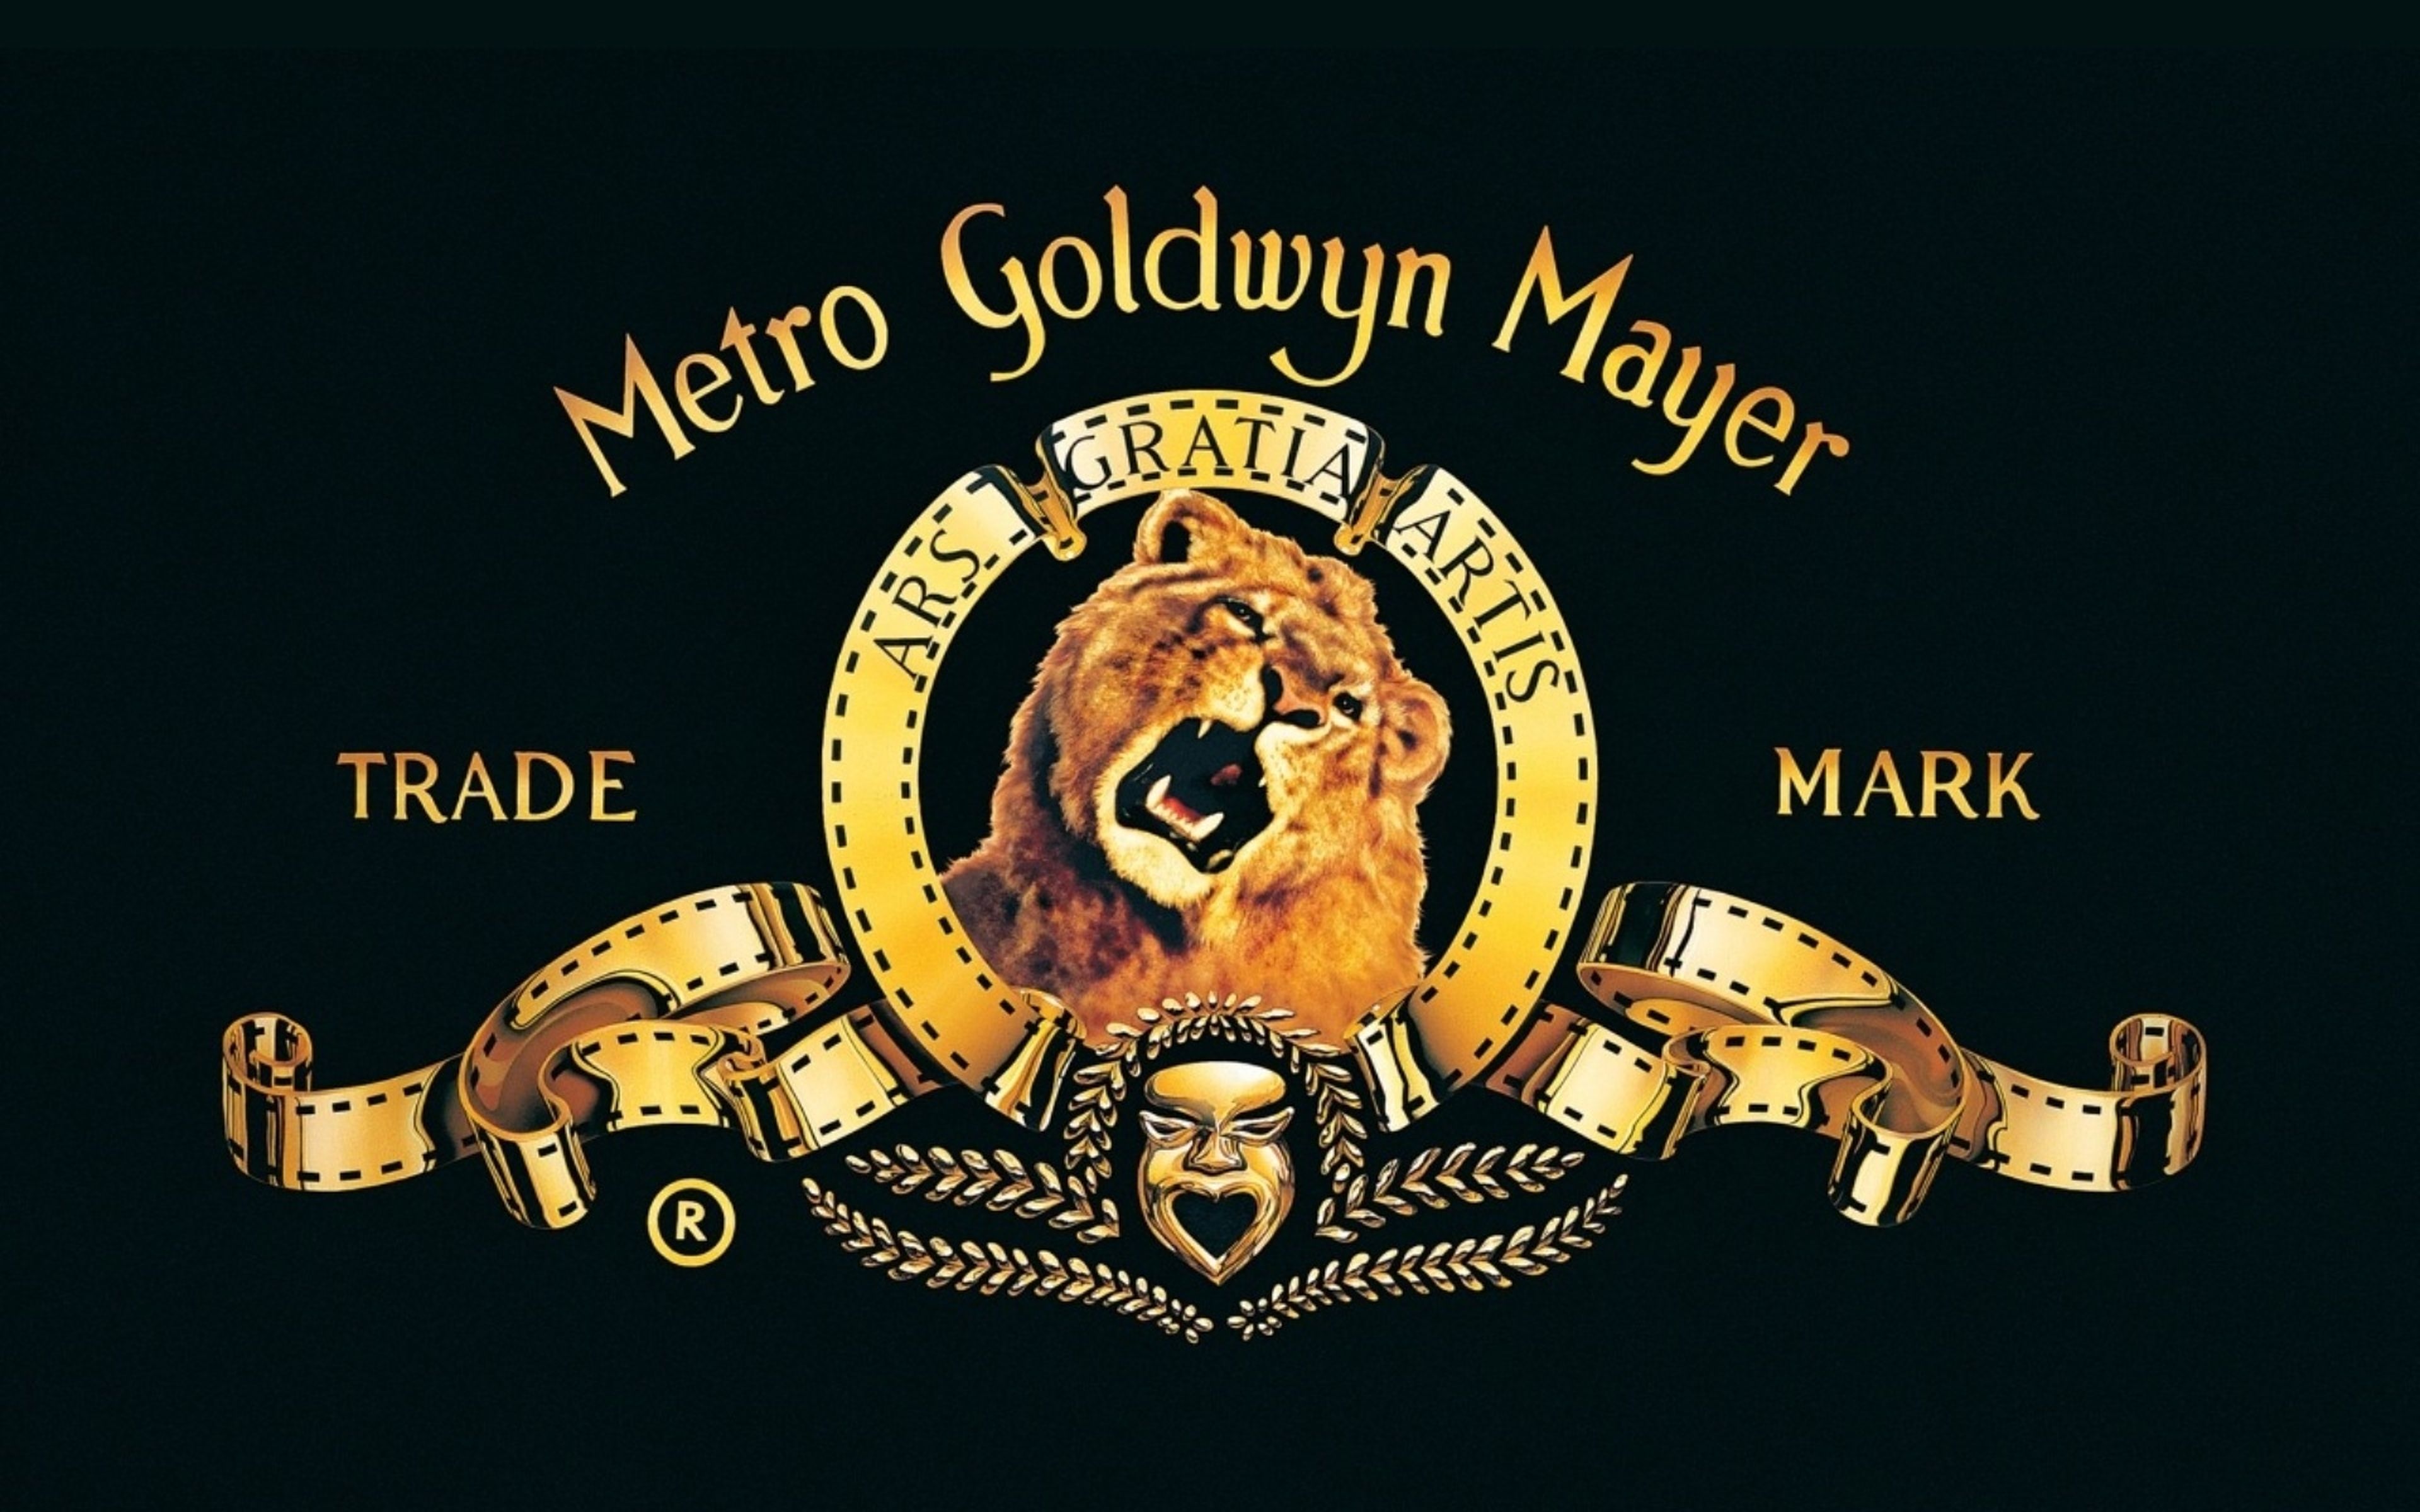 Amazon compra Metro Goldwyn Mayer por 8.450 millones de dólares, se hace con James Bond, Vikings y otras